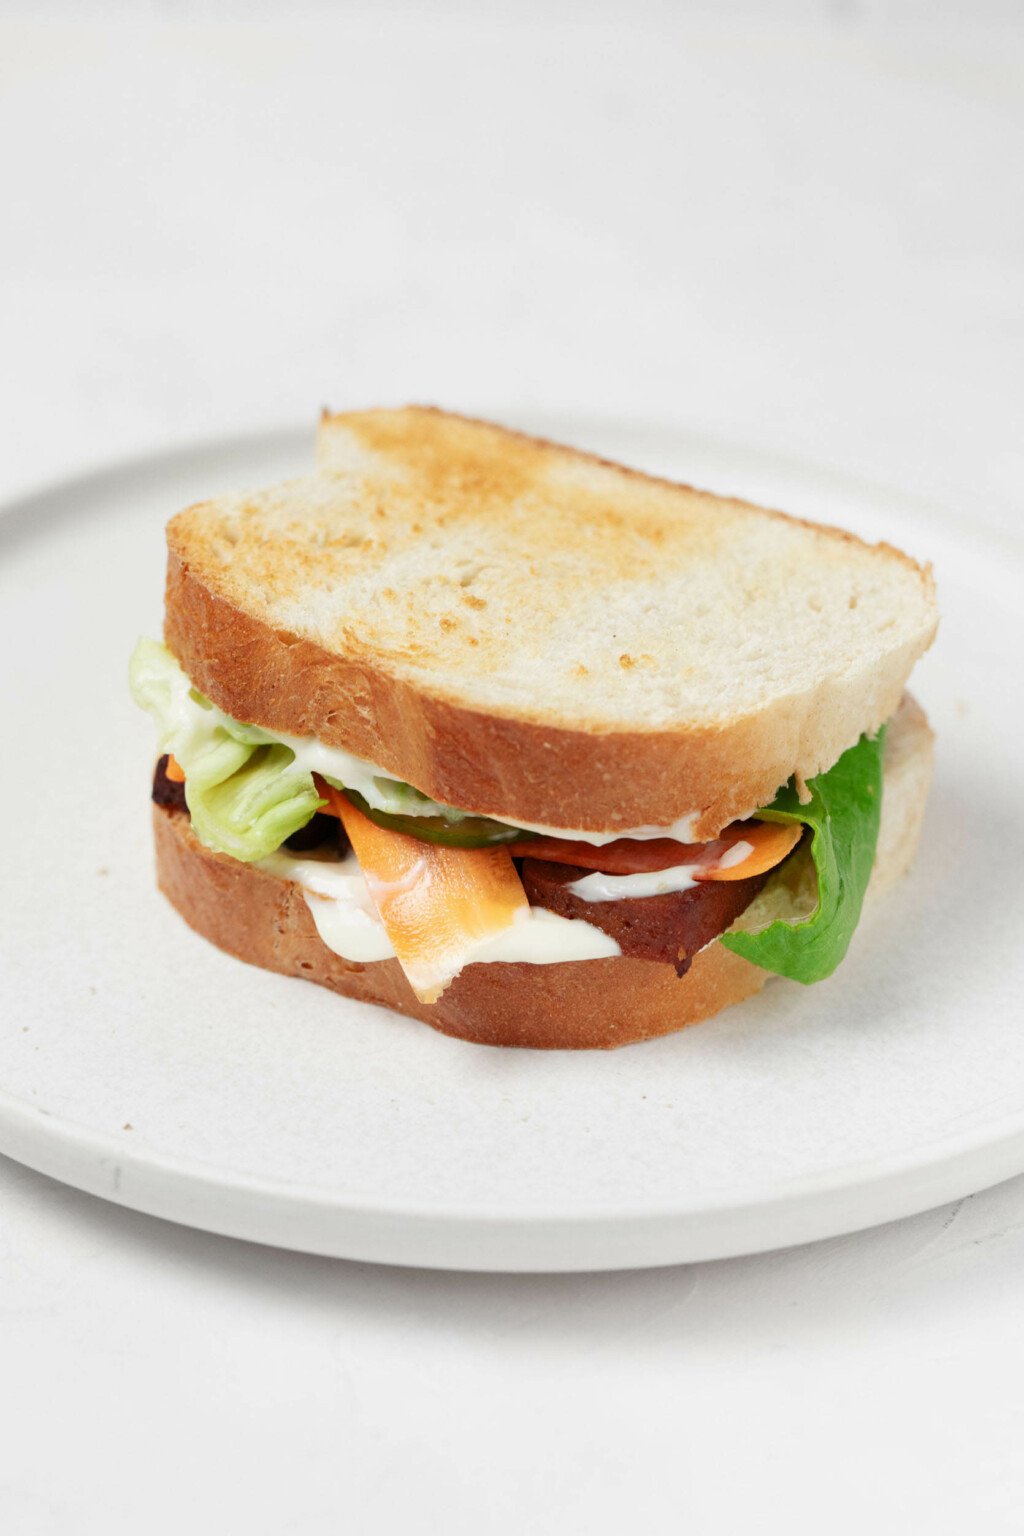 Ένα σάντουιτς, φτιαγμένο με φρυγανισμένο λευκό ψωμί, απεικονίζεται σε ένα στρογγυλό, λευκό πιάτο.  Το σάντουιτς καλύπτεται με μαγιονέζα, λαχανικά τουρσί και φέτες ψημένο τόφου.